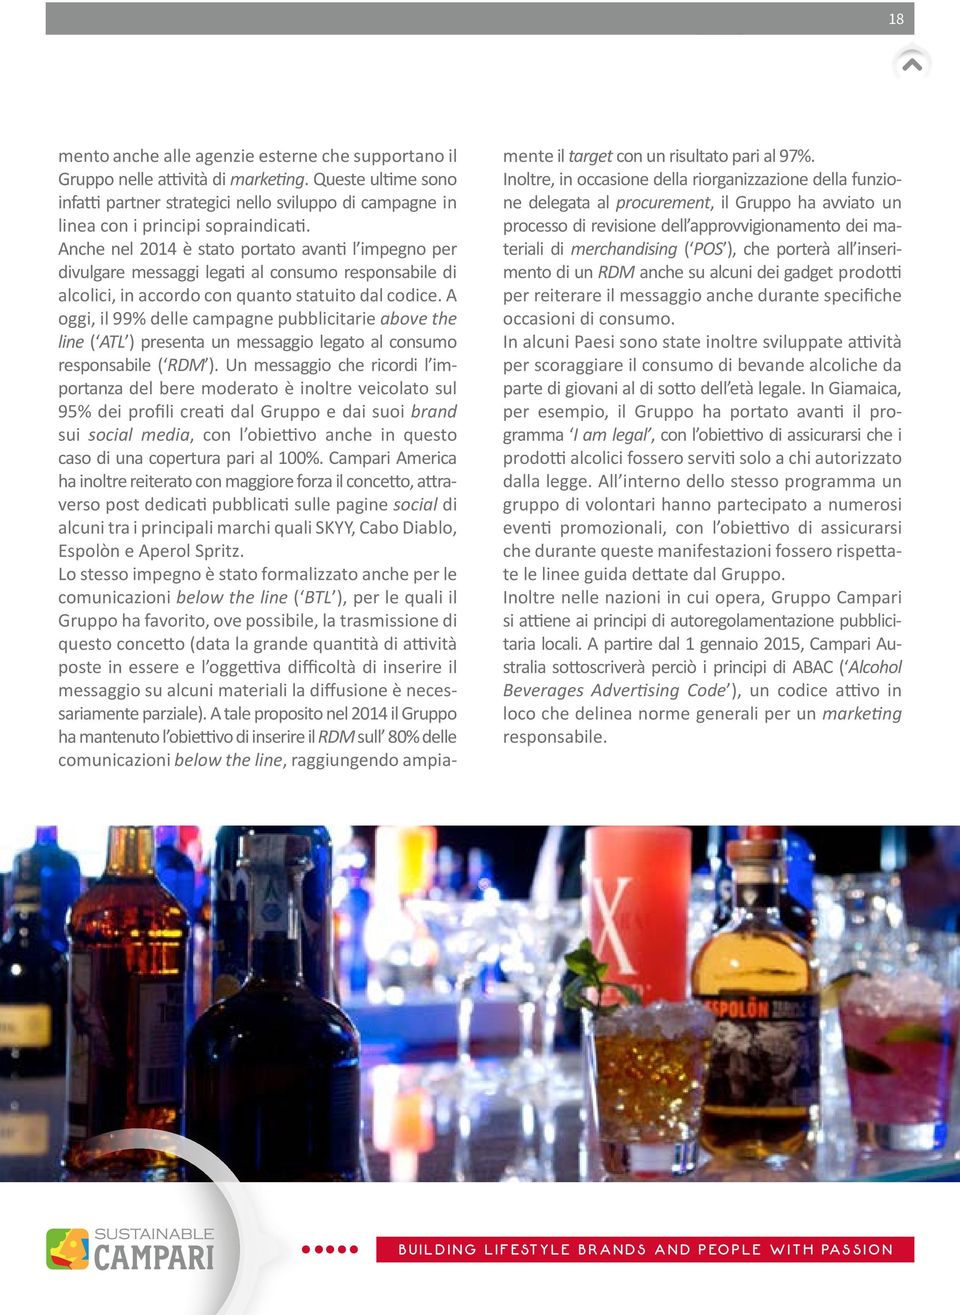 Anche nel 2014 è stato portato avanti l impegno per divulgare messaggi legati al consumo responsabile di alcolici, in accordo con quanto statuito dal codice.